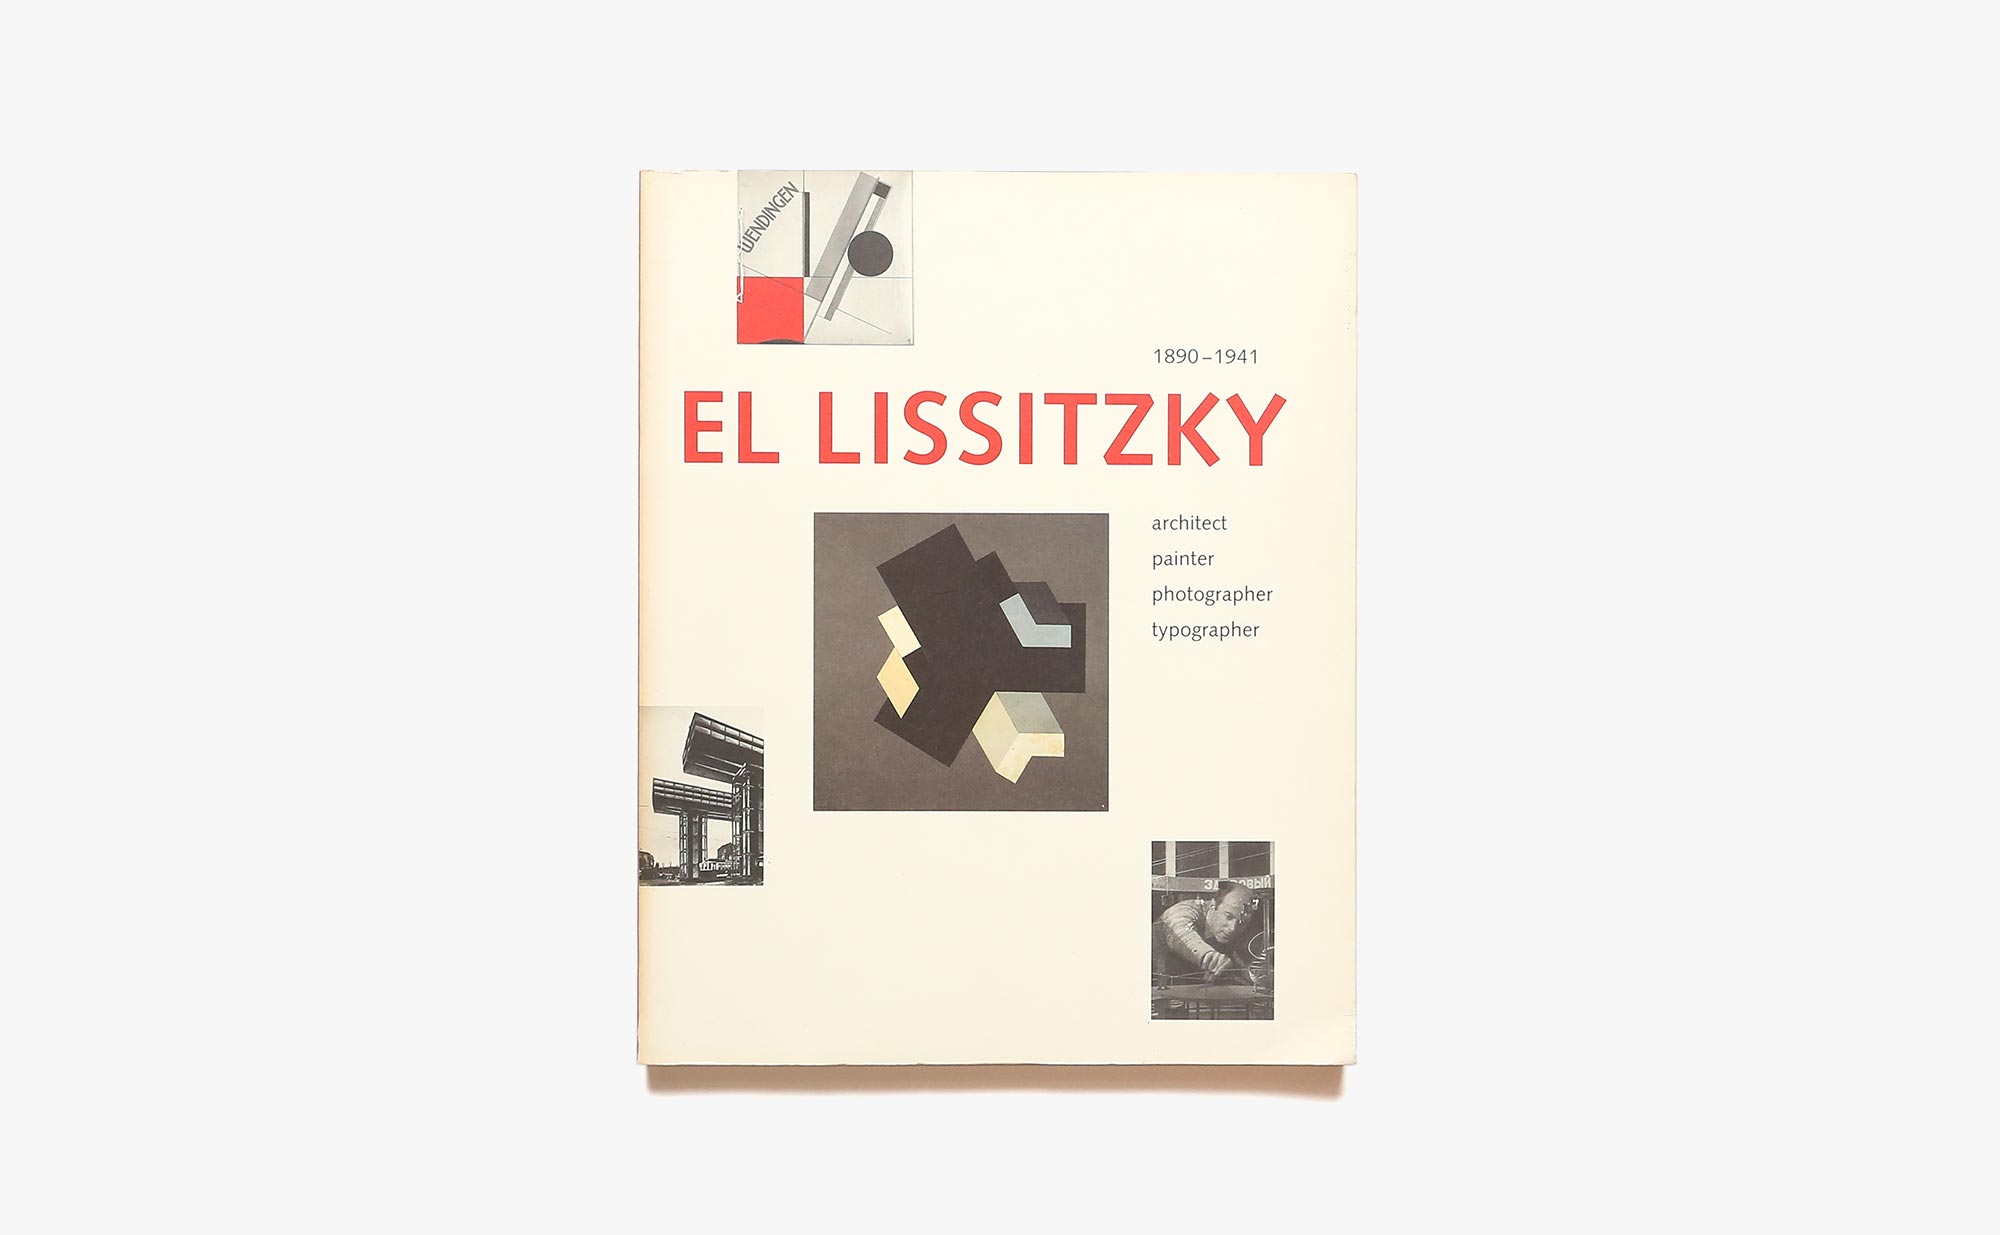 El Lissitzky 1890-1941